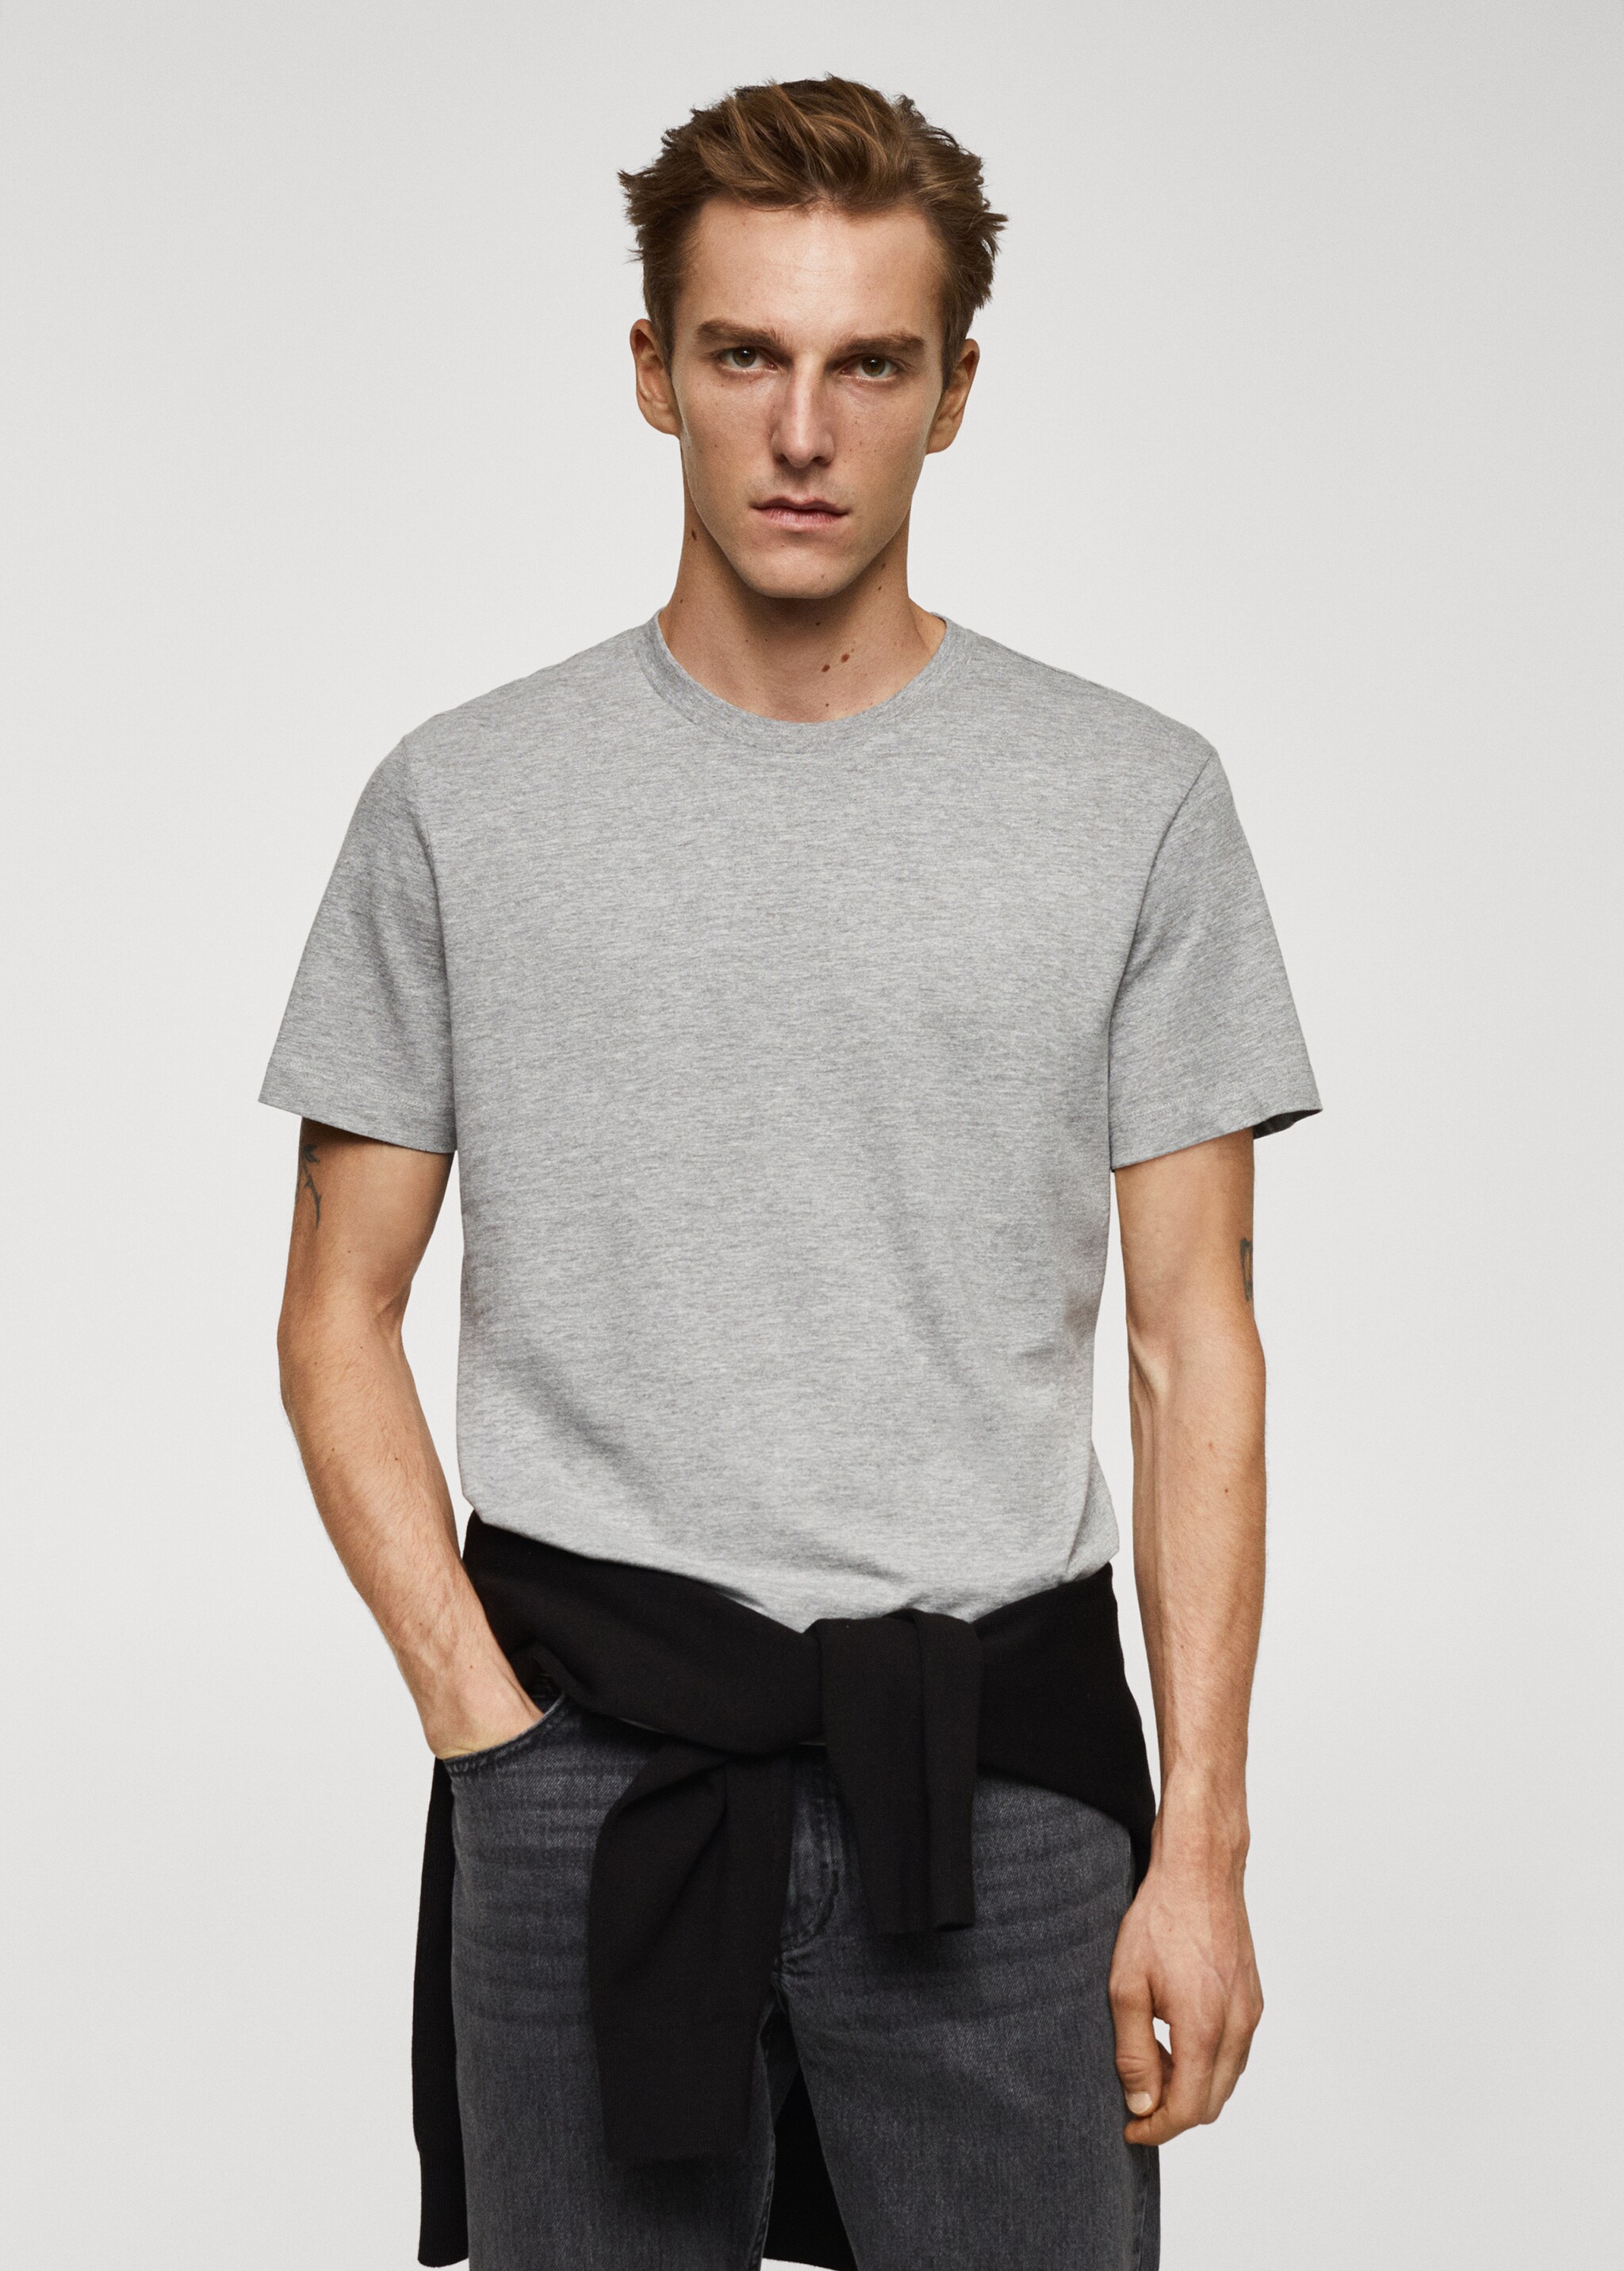 T-shirt essentiel coton stretch - Plan moyen